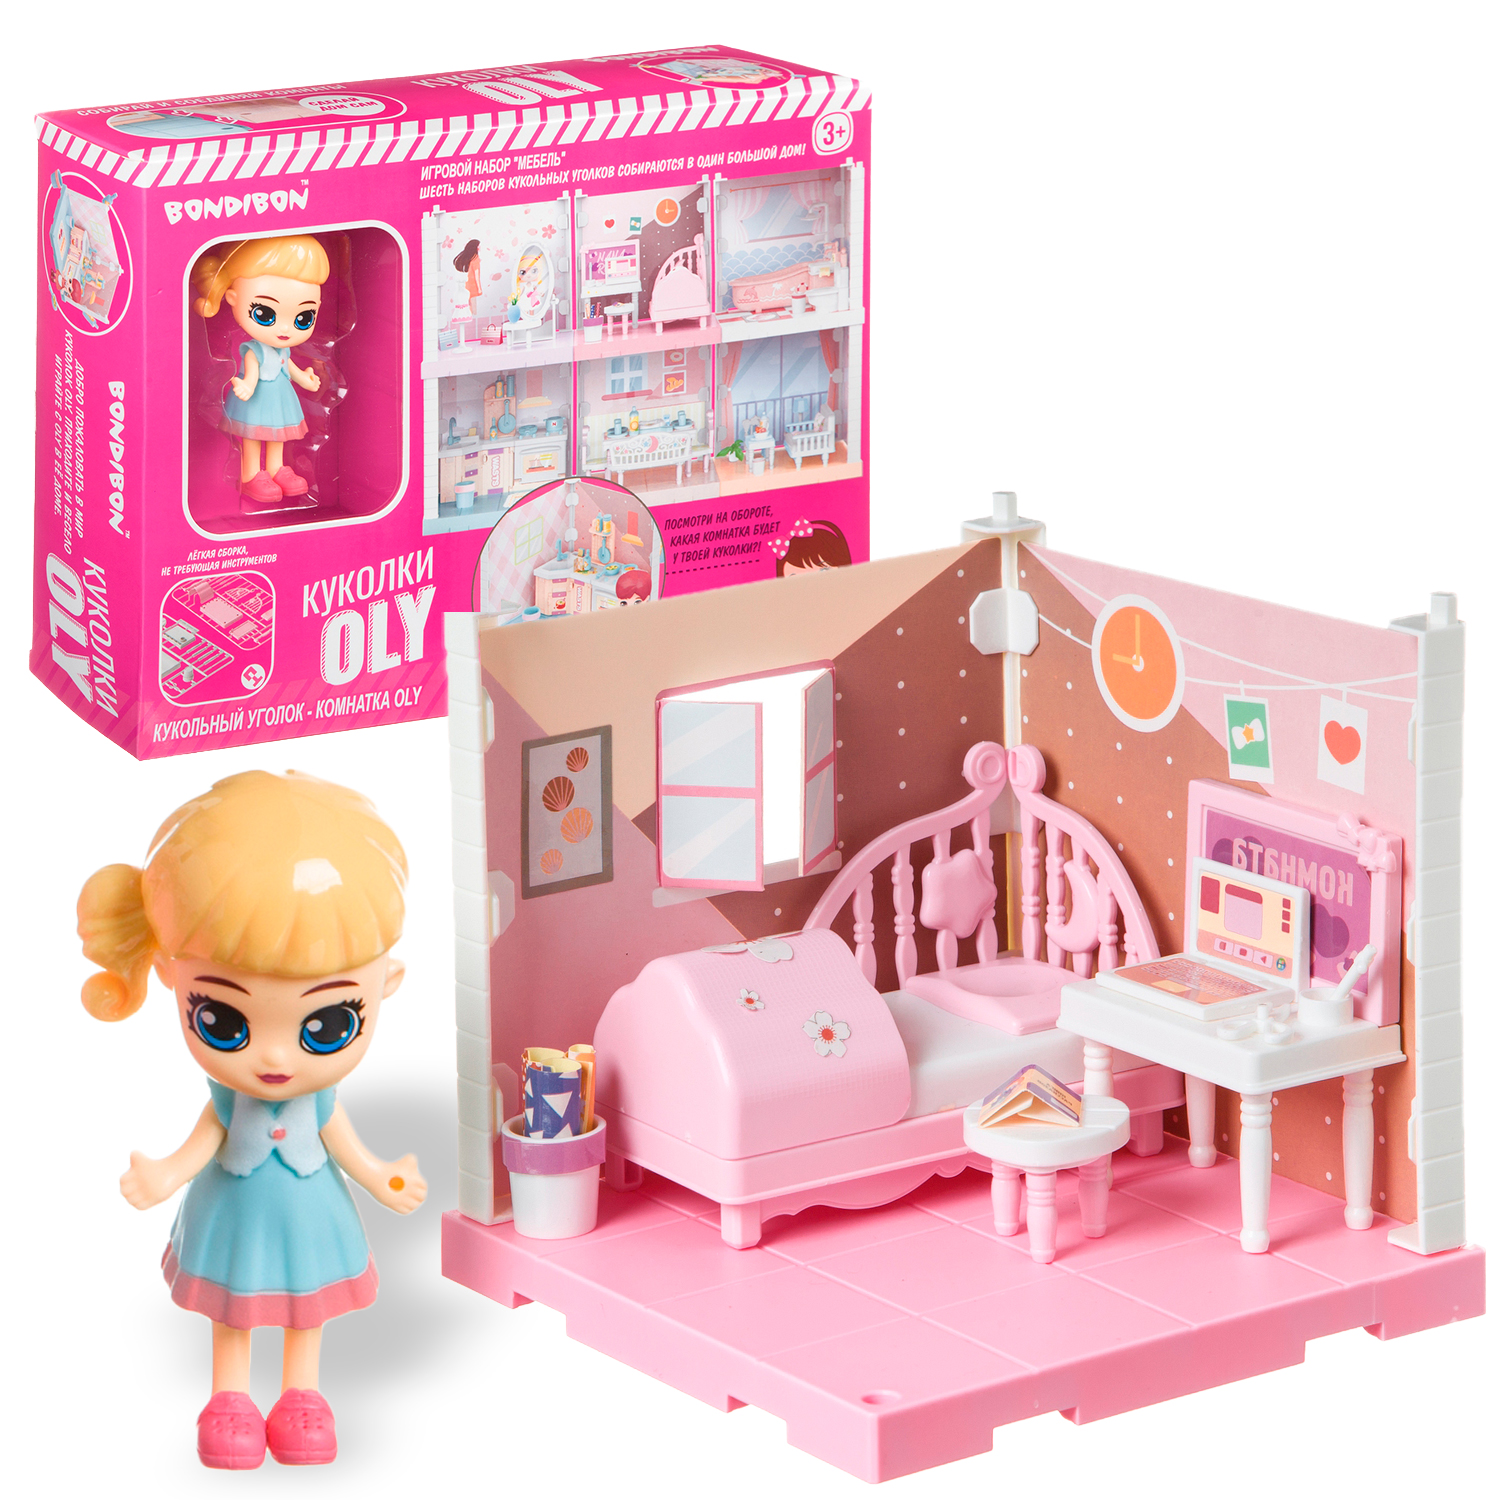 Игровой набор мебели спальня BONDIBON Кукольный уголок с куколкой OLY ВВ4492 - фото 1